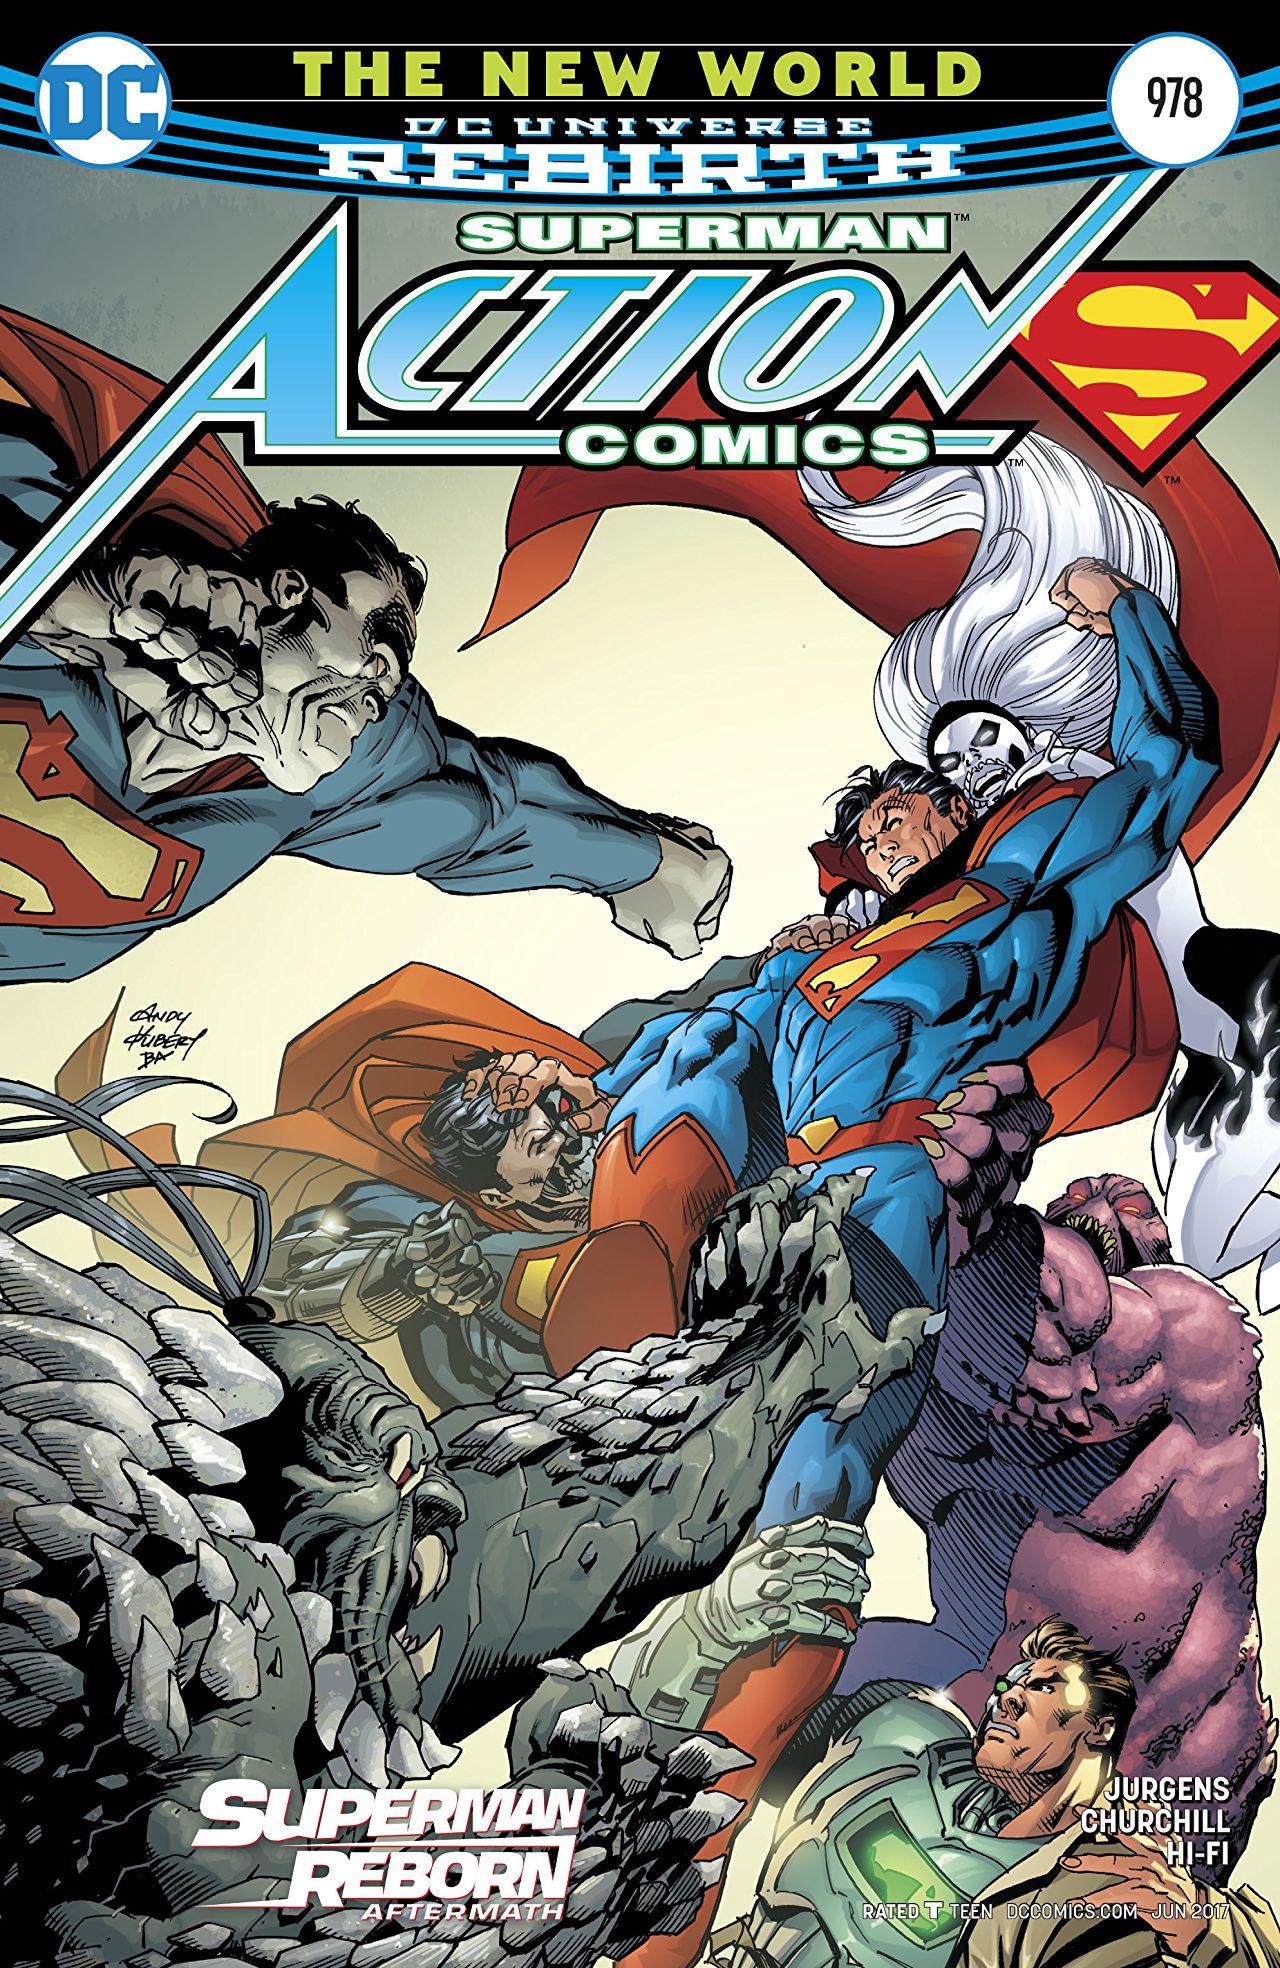 Action Comics Vol. 1 #978